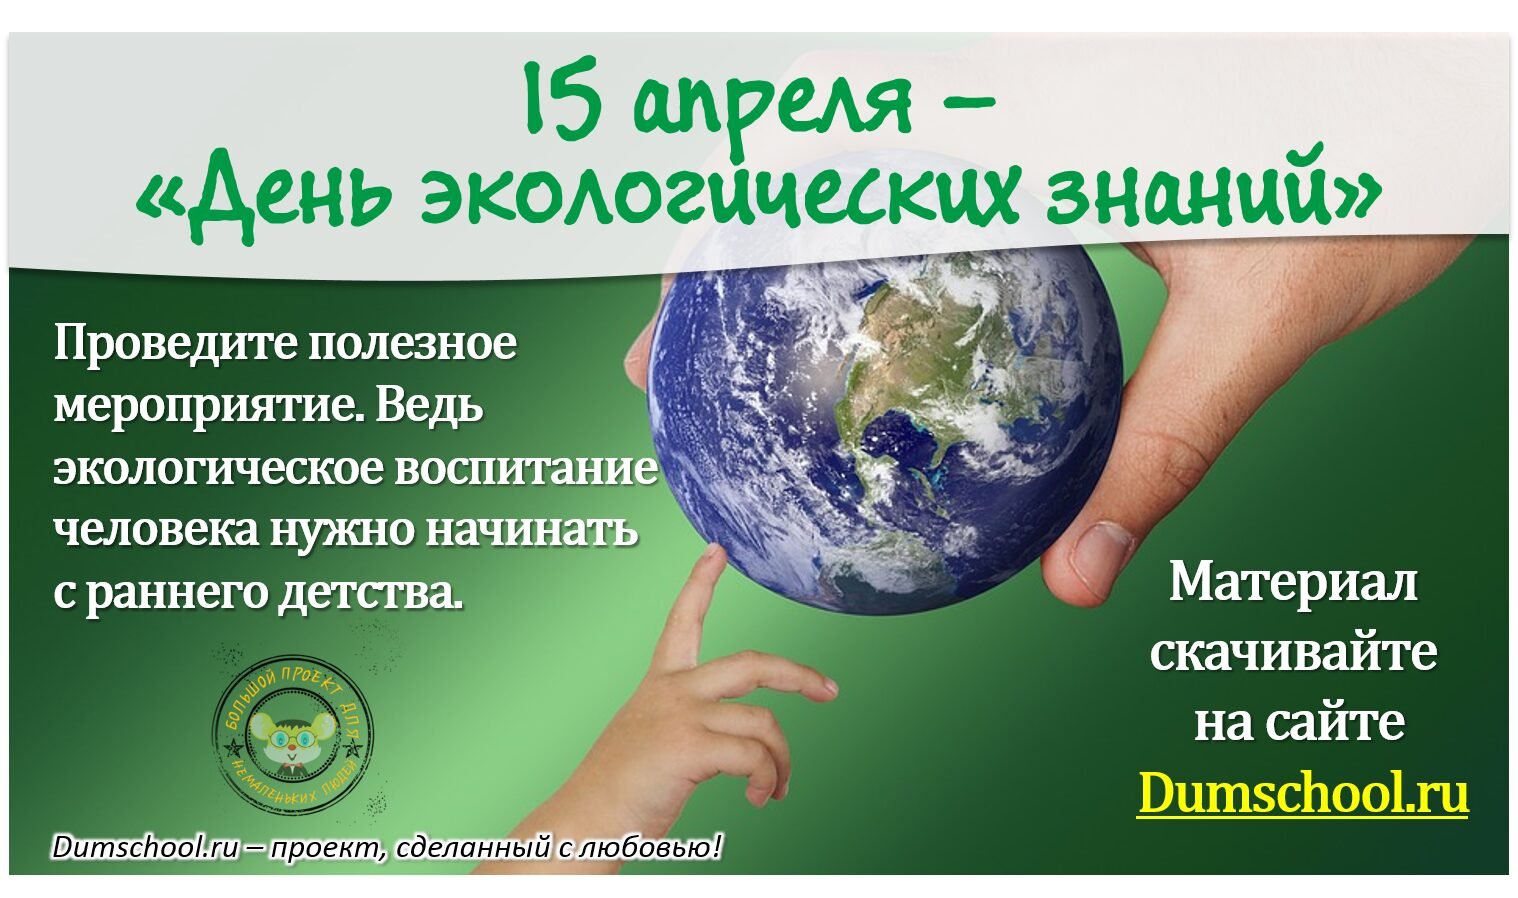 15 апреля день экологических знаний для детей